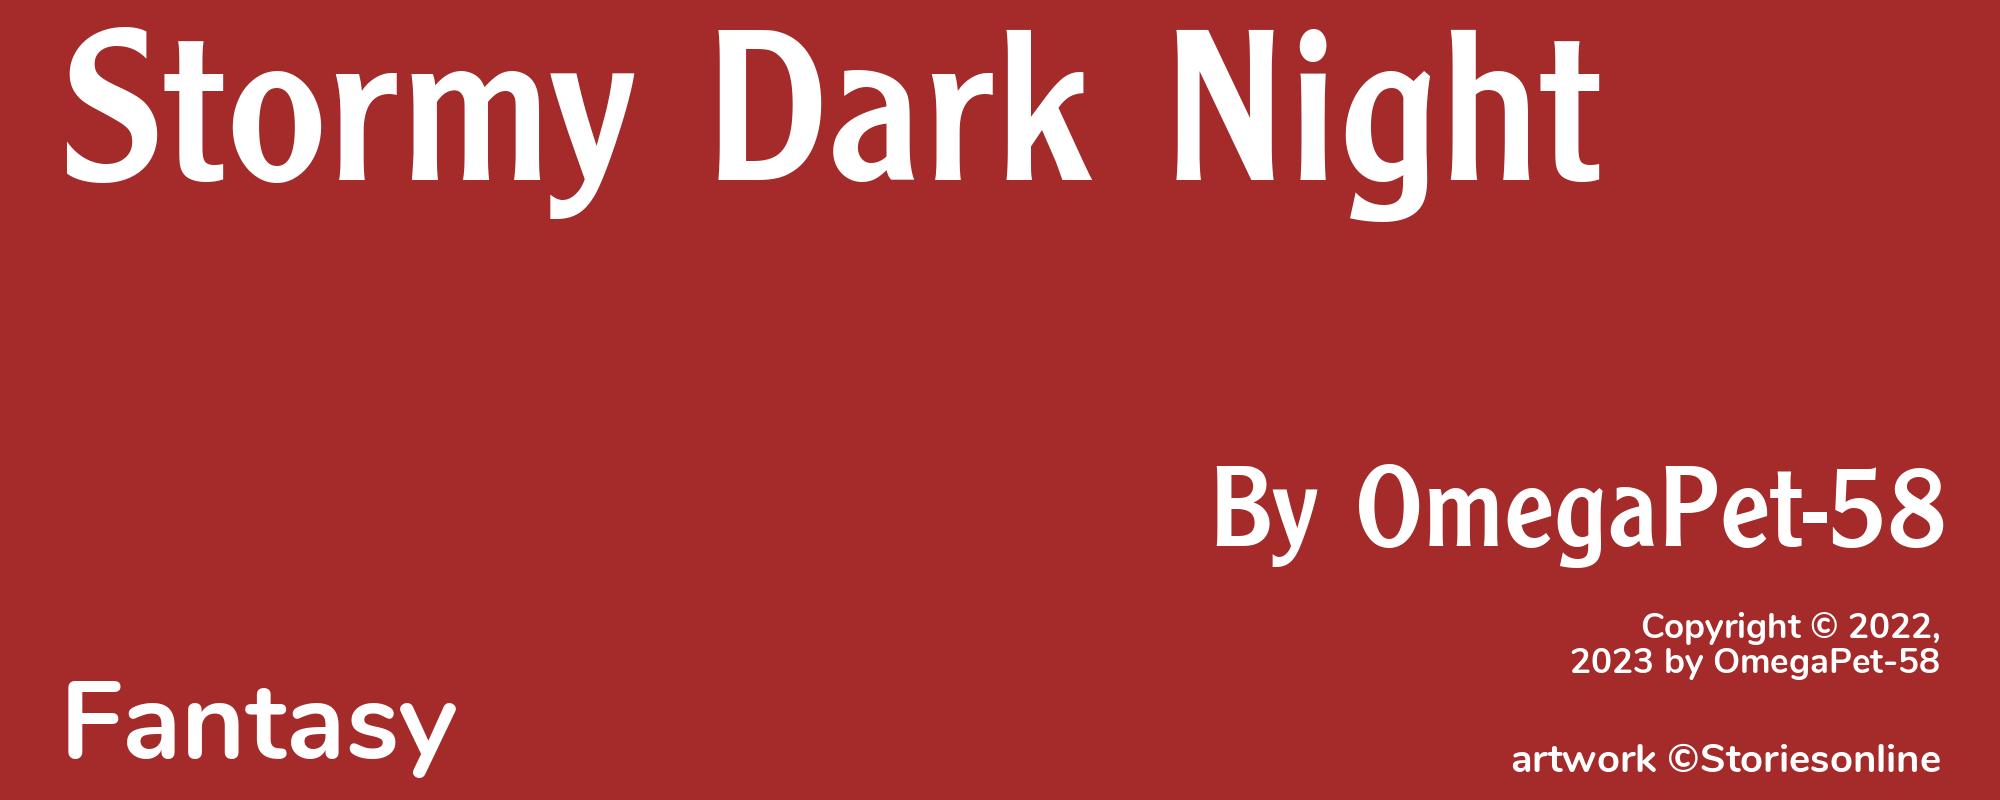 Stormy Dark Night - Cover